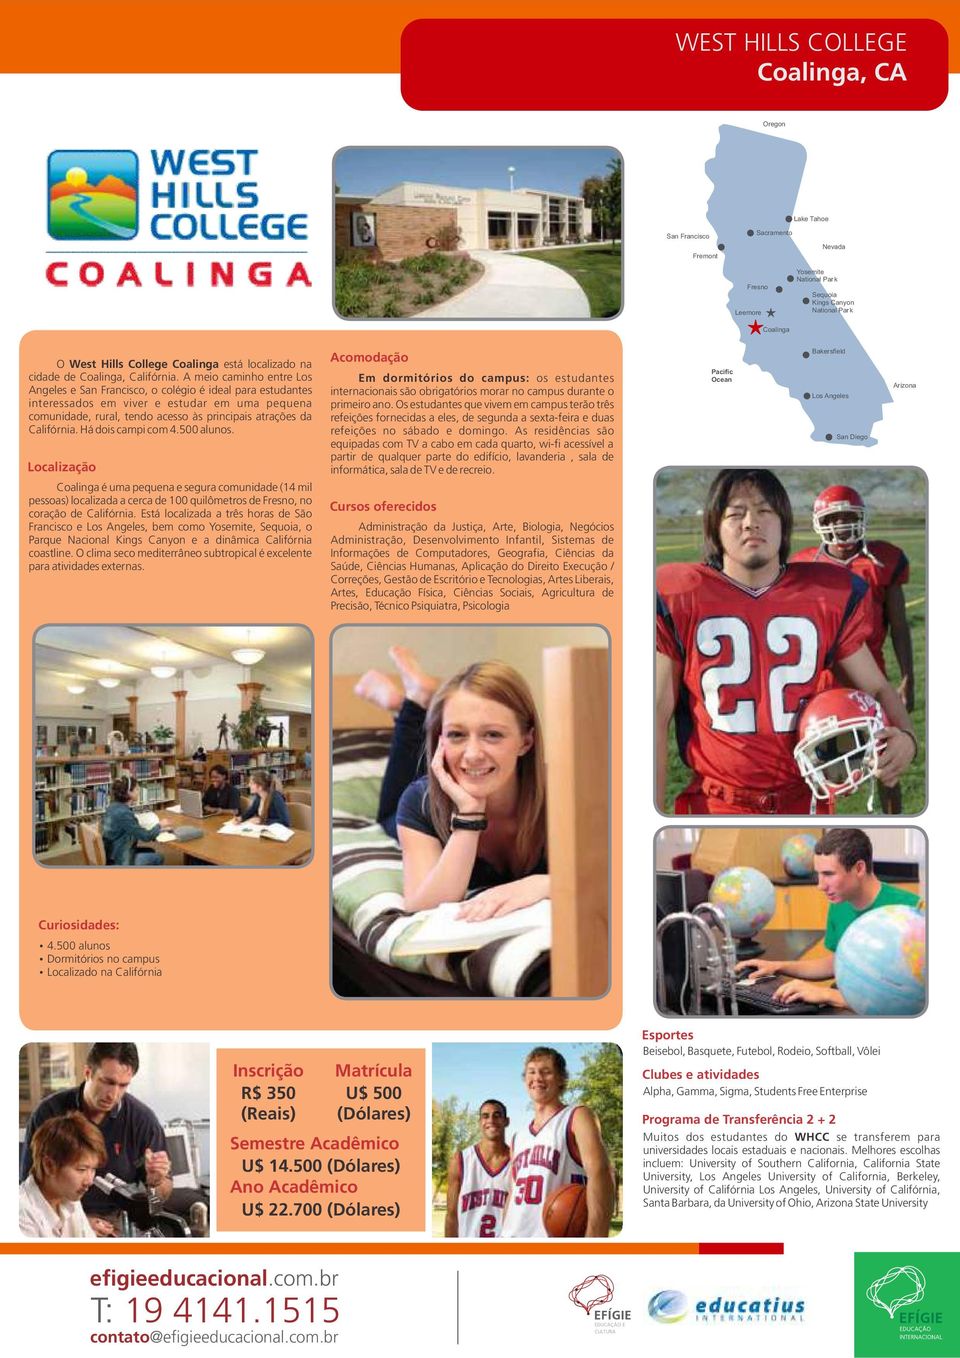 A meio caminho entre Los Angeles e San Francisco, o colégio é ideal para estudantes interessados em viver e estudar em uma pequena comunidade, rural, tendo acesso às principais atrações da Califórnia.